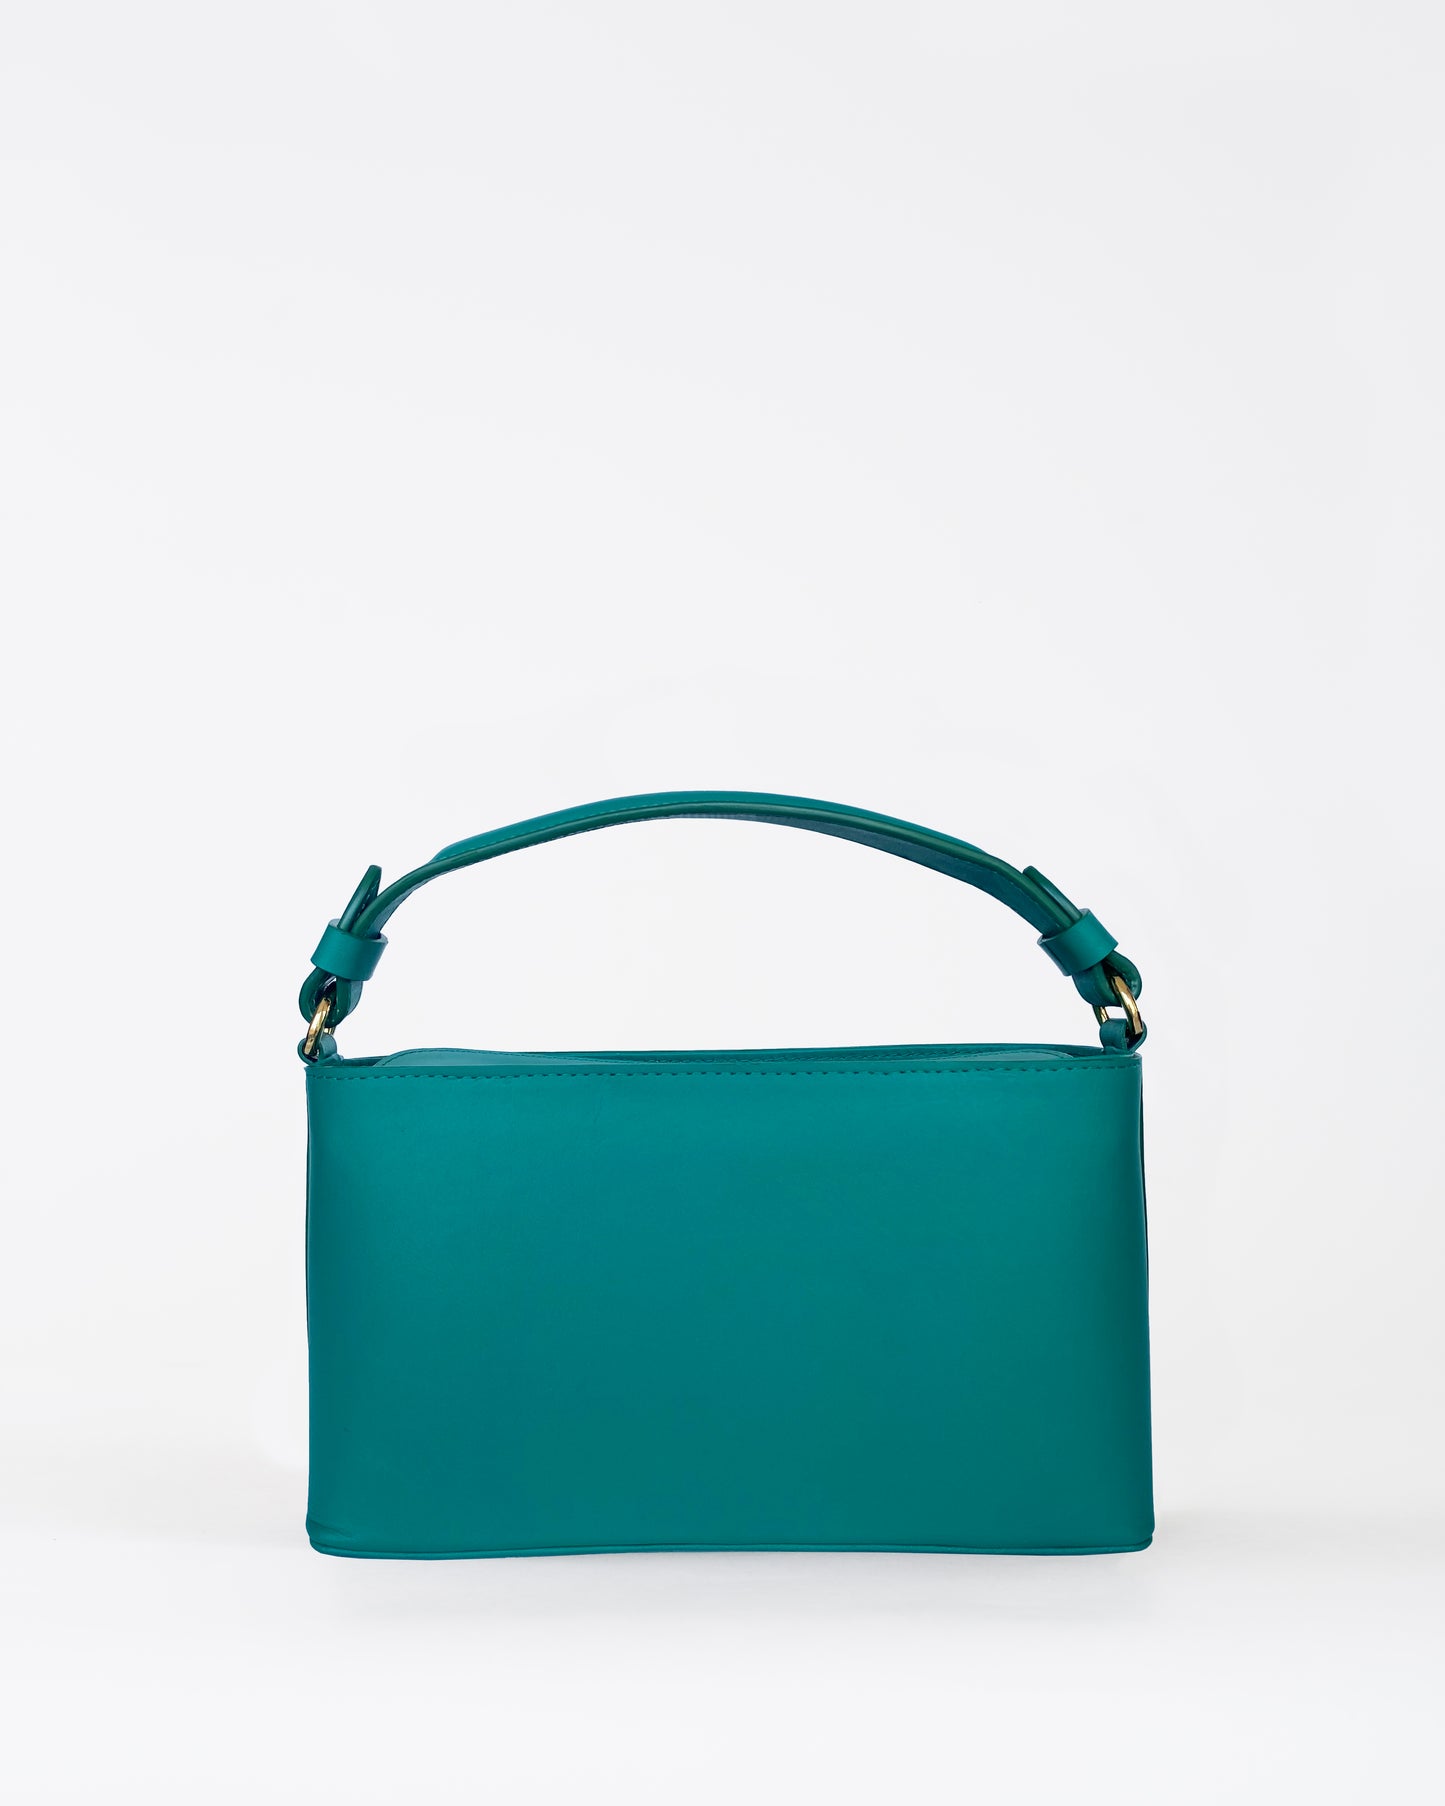 Jardin handbag Emerald Green - Sample